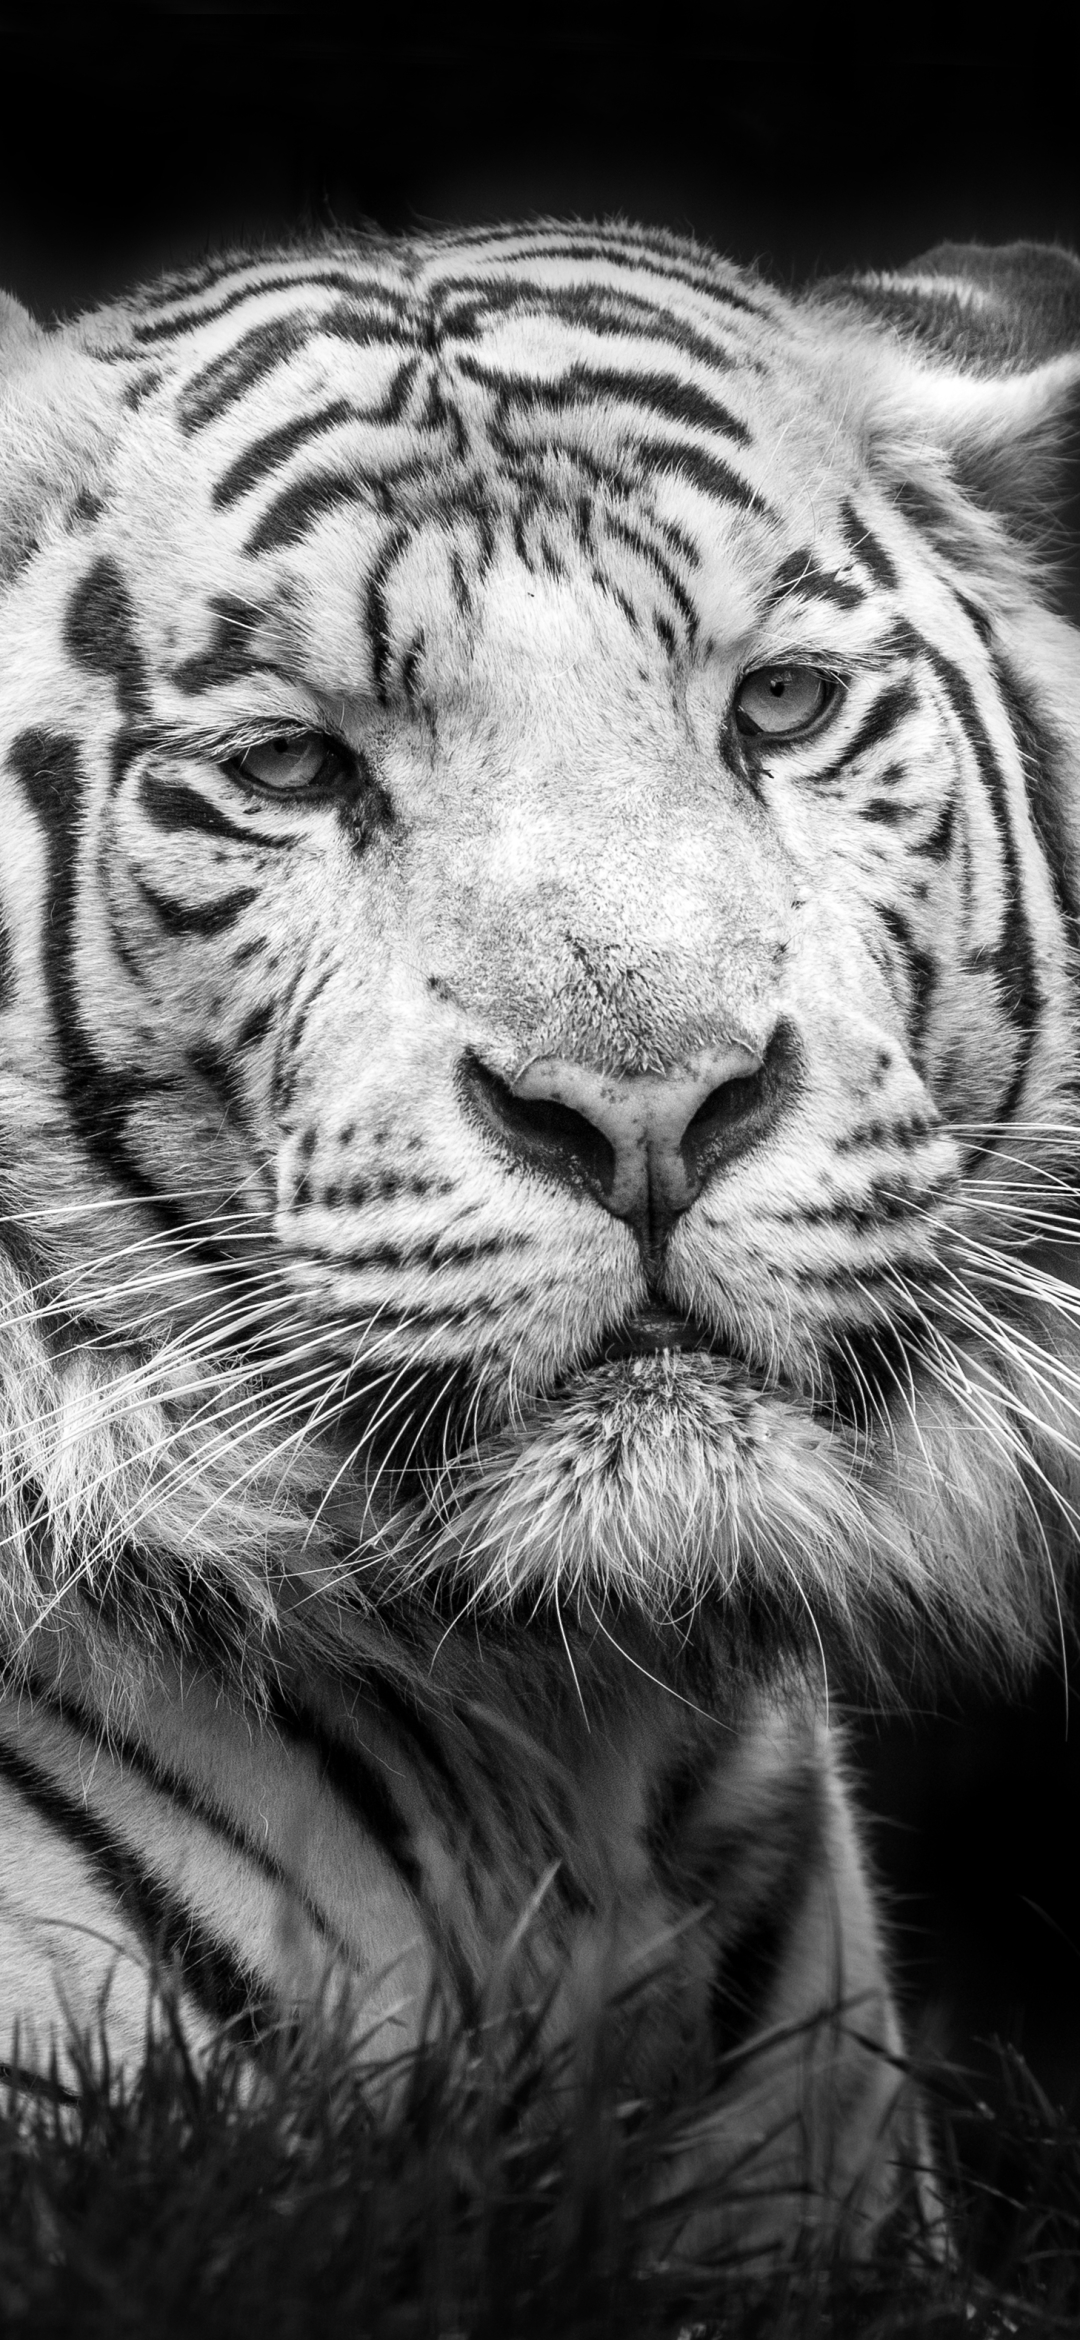 Descarga gratuita de fondo de pantalla para móvil de Animales, Gatos, Tigre, Blanco Y Negro, Tigre Blanco, Blanco Negro.